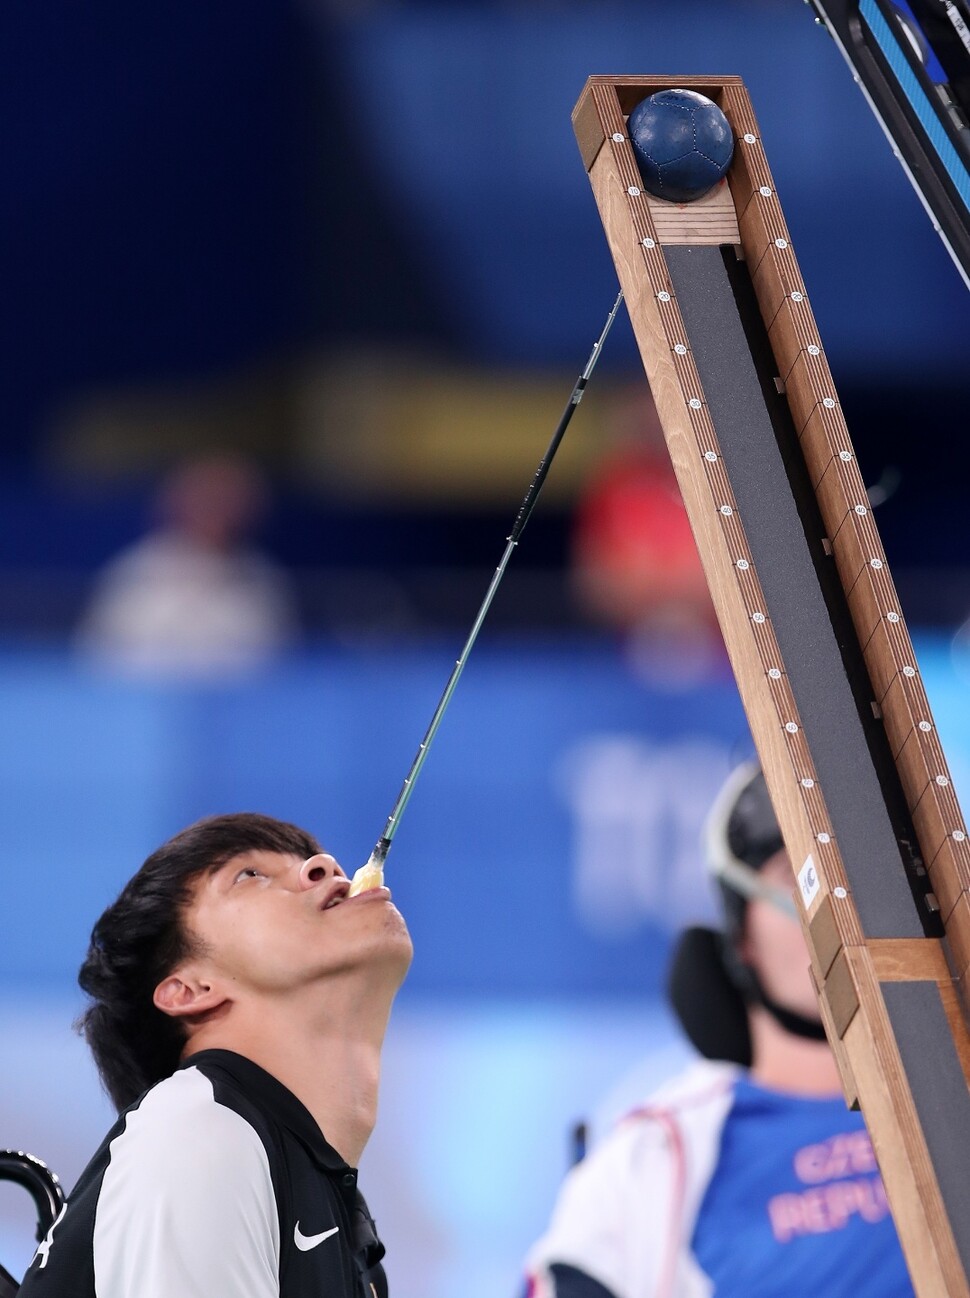 정호원이  31일 일본 도쿄 아리아케 체조경기장에서 열린 2020 도쿄패럴림픽 개인전(스포츠등급 BC3) 8강 경기를 펼치고 있다. 대한장애인체육회 제공